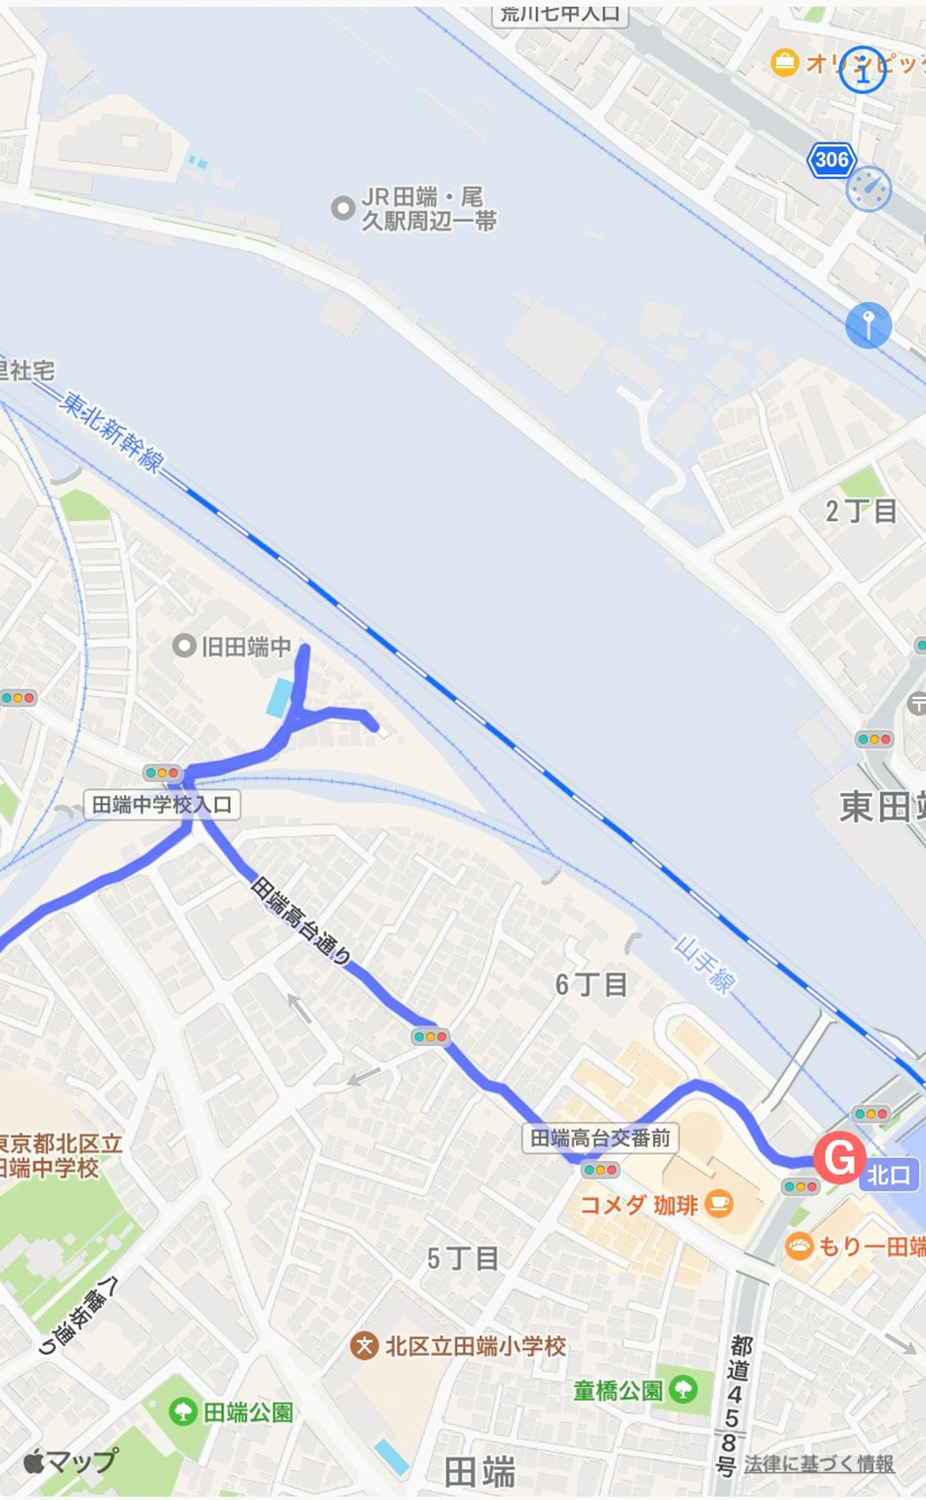 新幹線を見に少し寄り道。東進して田端駅に至る。